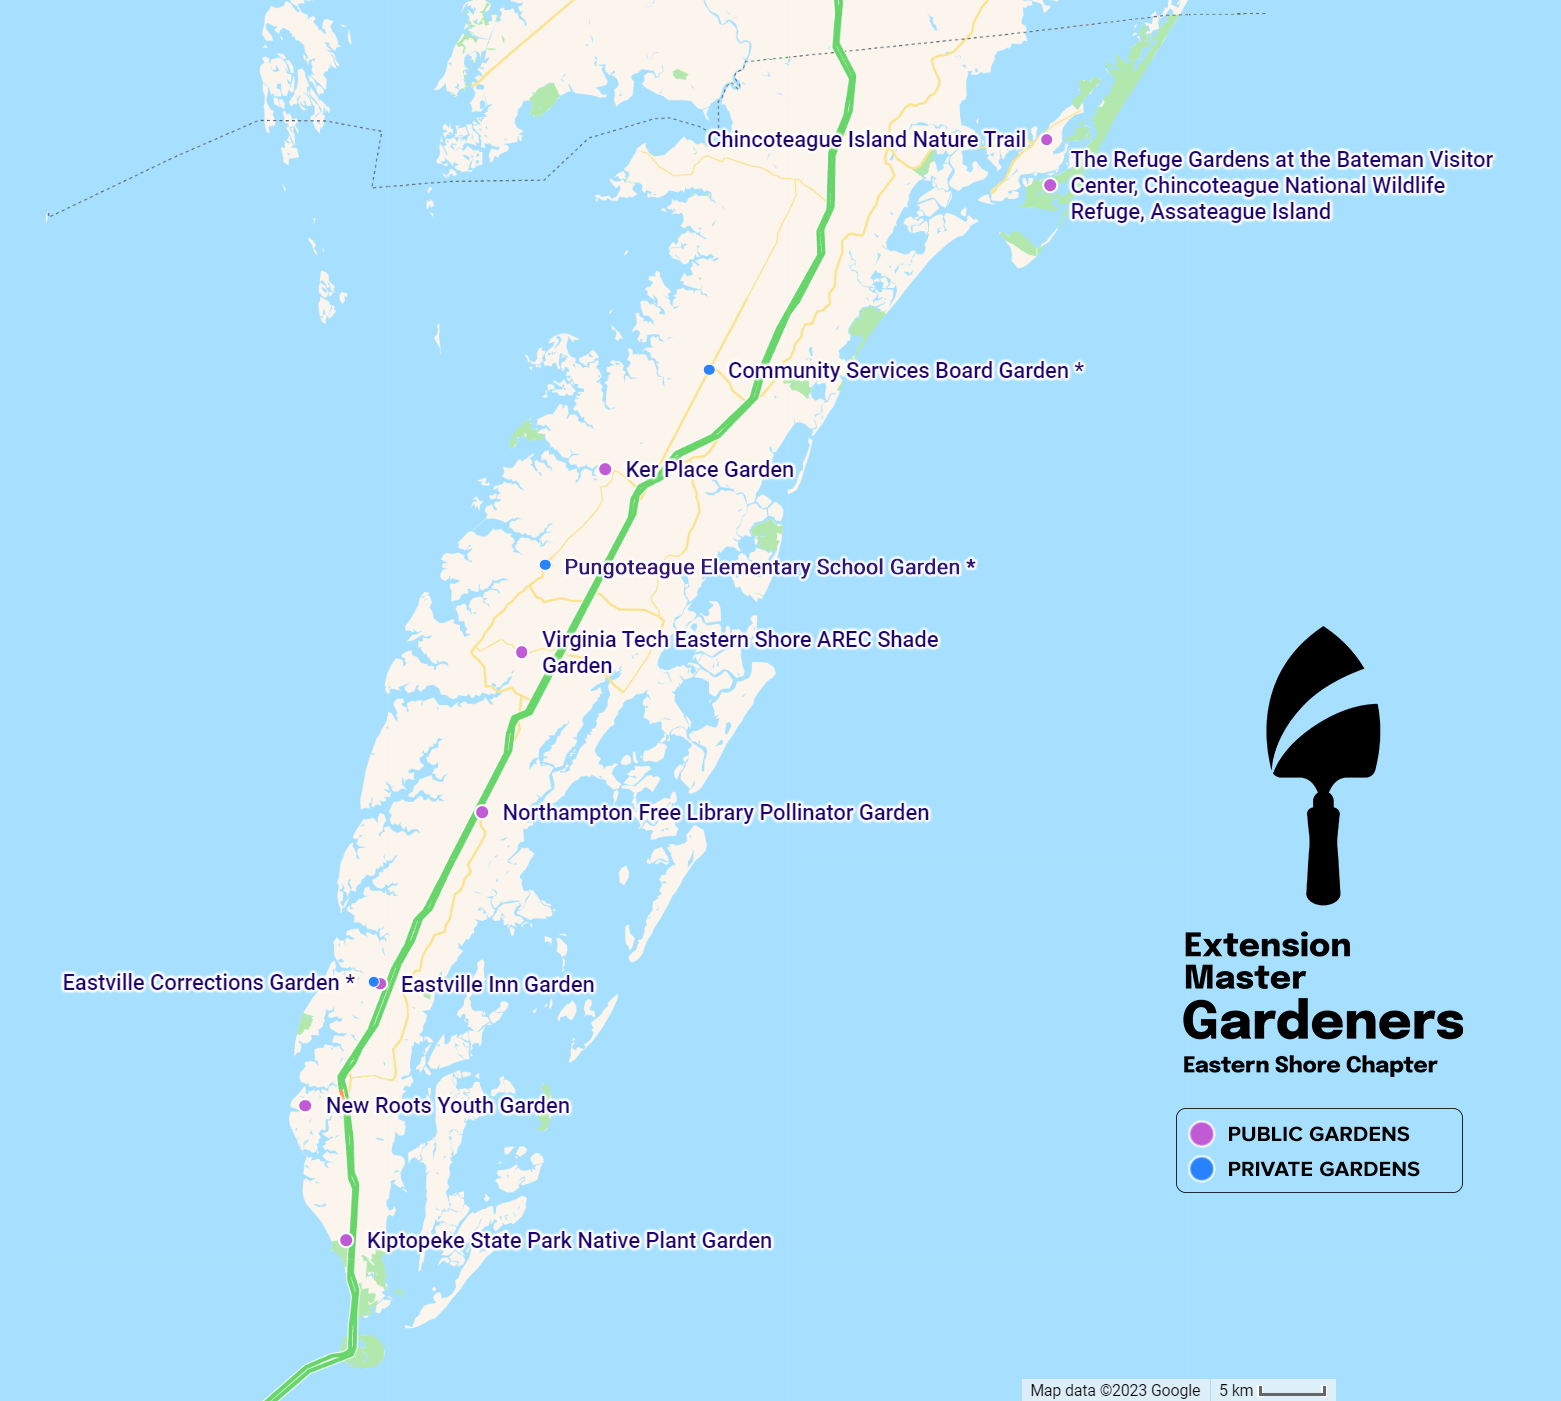 ESVG Gardens Map